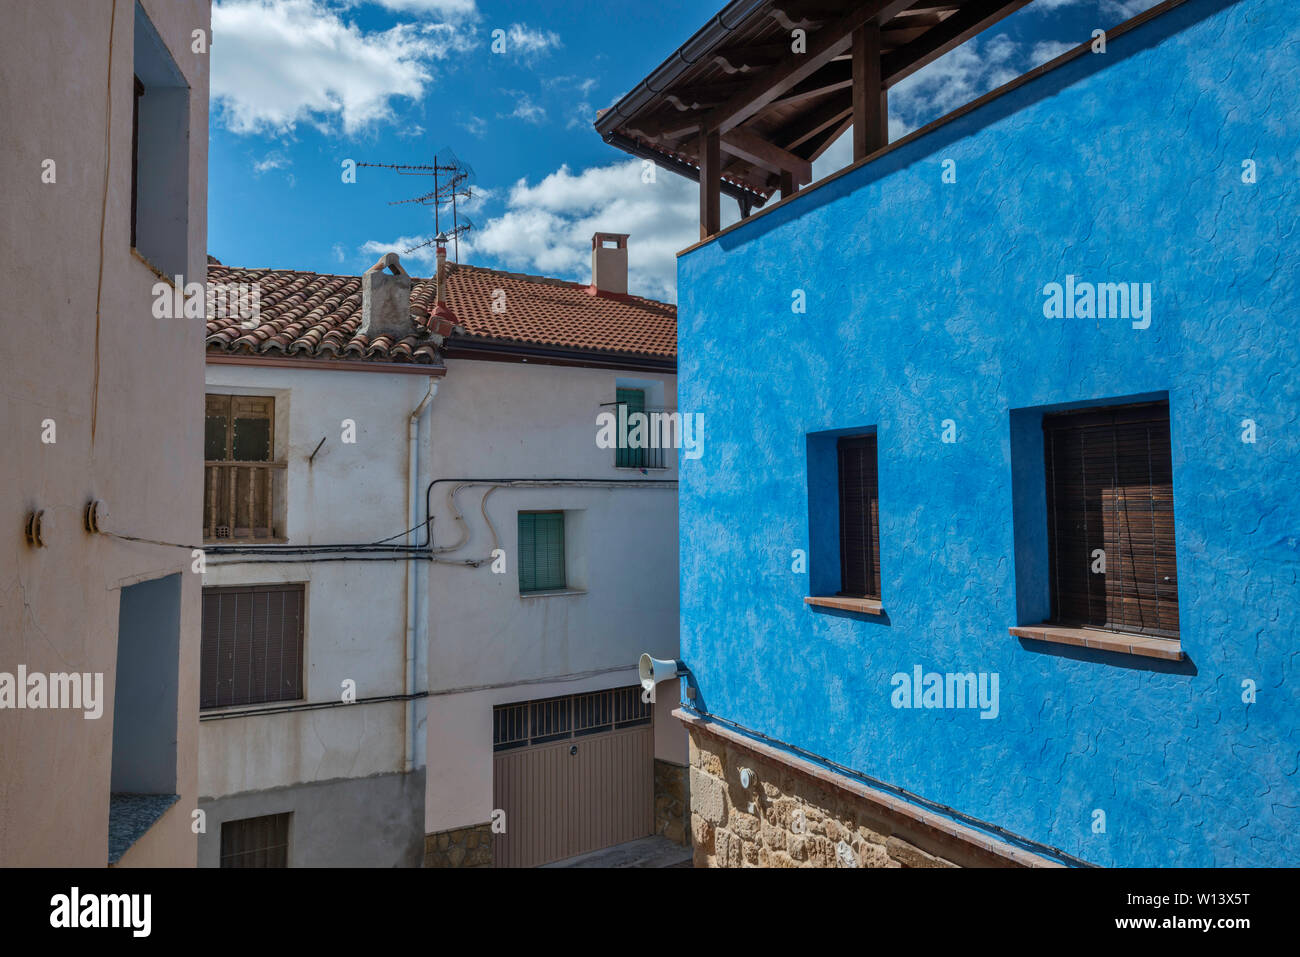 Houses in village of La Mata de los Olmos, Teruel province, Aragon, Spain Stock Photo